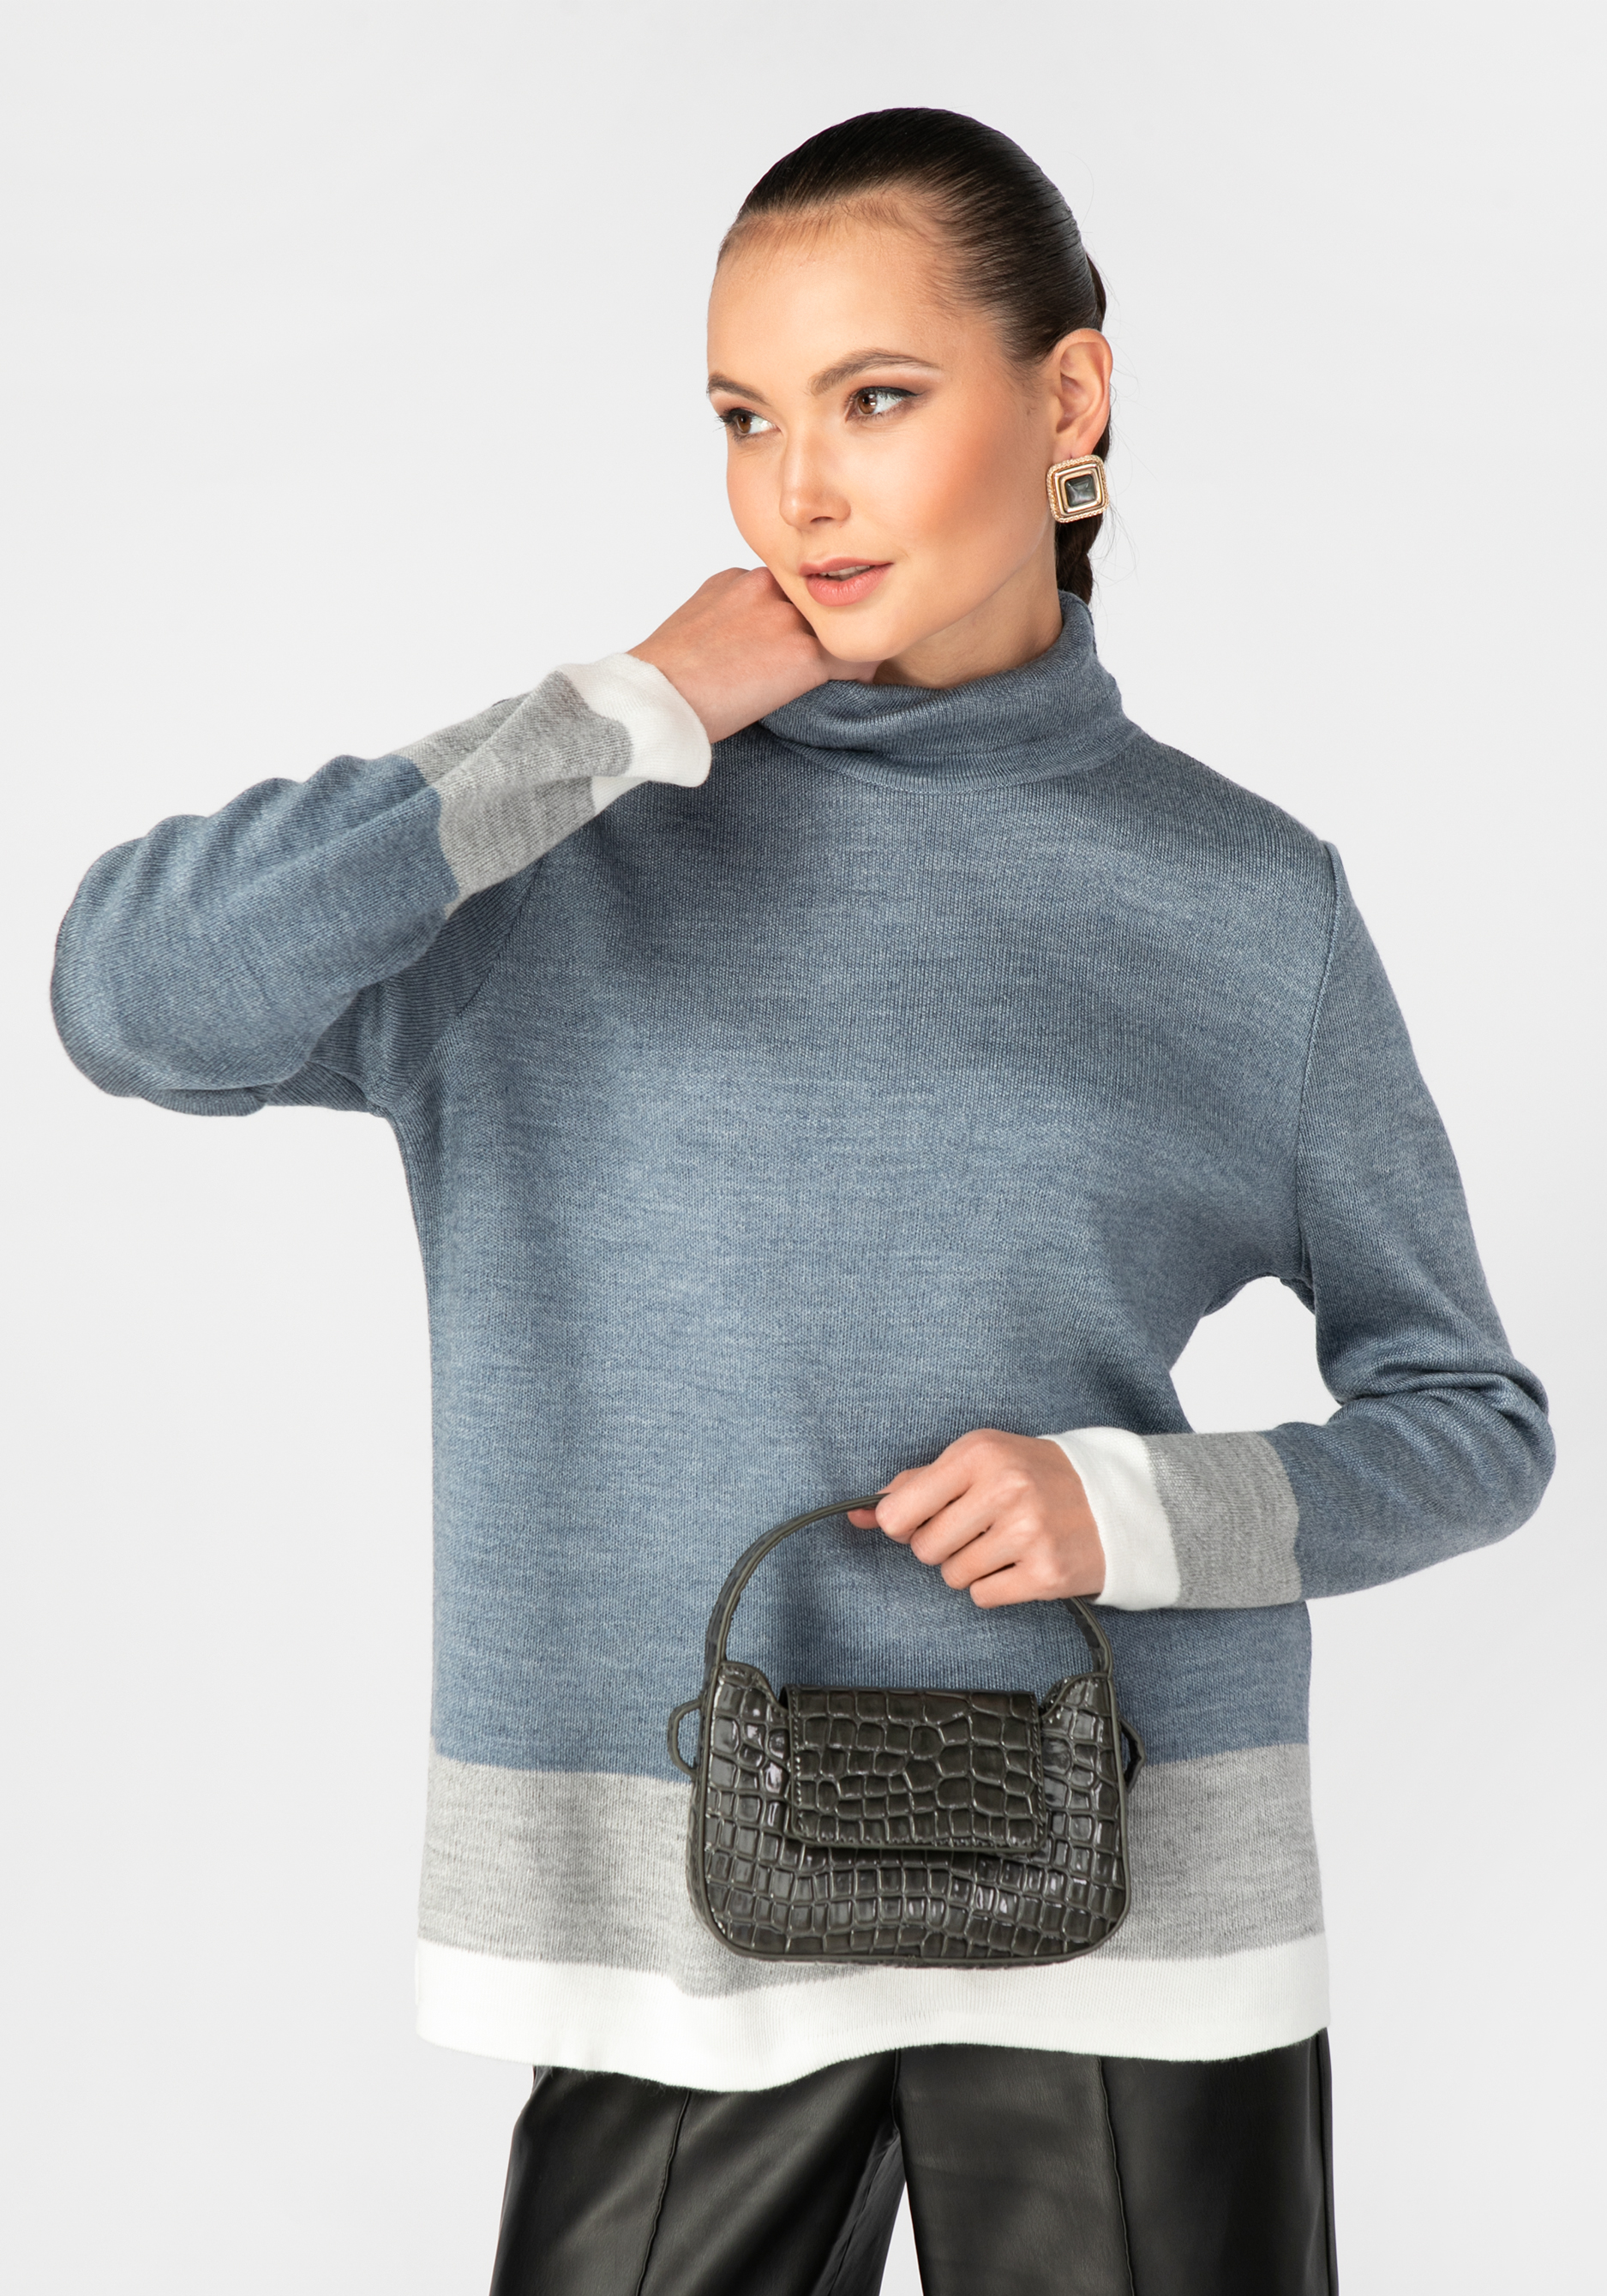 Свитер женский с контрастными полосами triol свитер косички xl горчичный